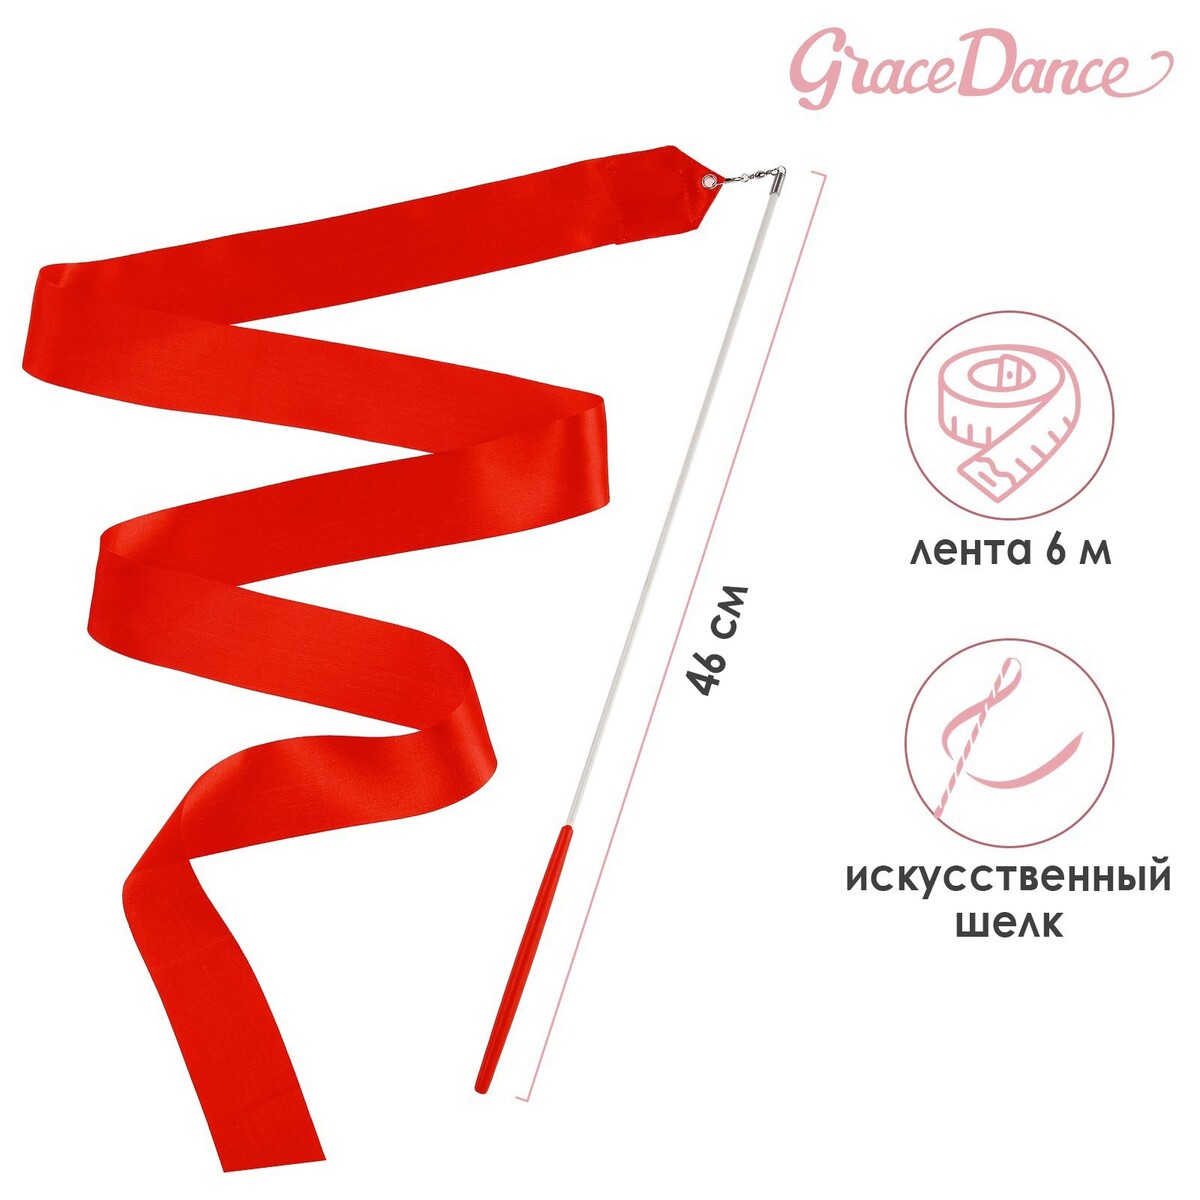 Лента для художественной гимнастики с палочкой grace dance, 6 м, цвет красный лента для художественной гимнастики с палочкой grace dance 6 м красный